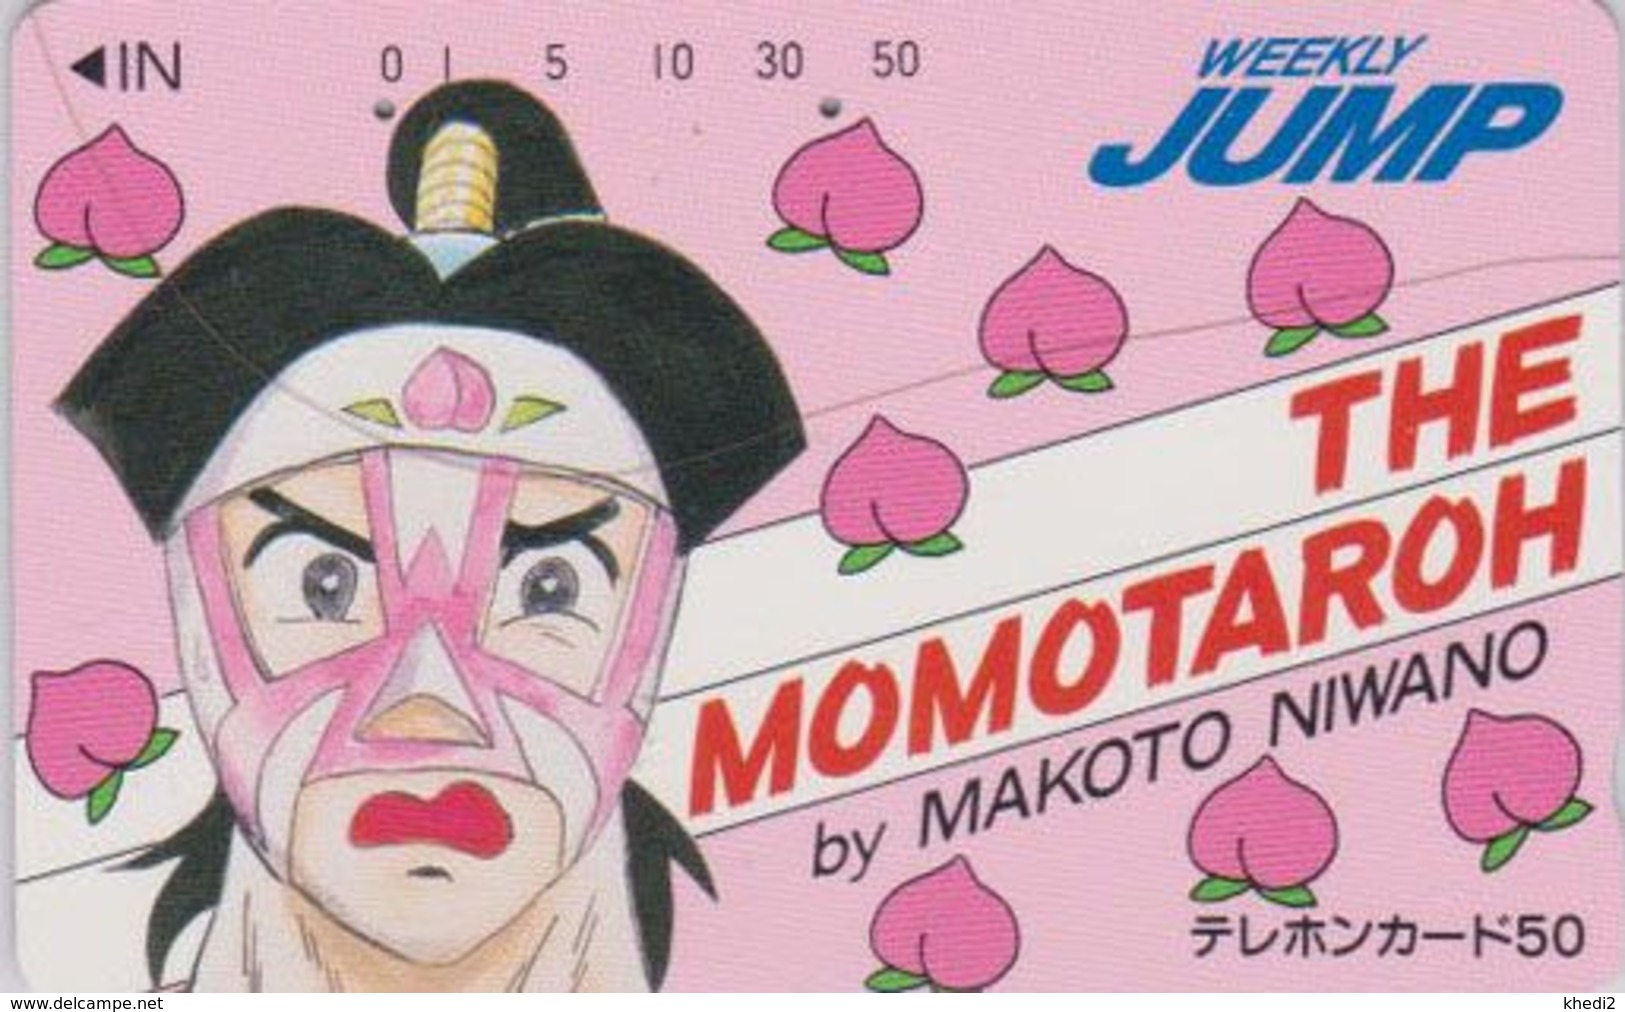 Télécarte Japon / 110-37291 - MANGA - WEEKLY JUMP - THE MOMOTAROH - ANIME Japan Phonecard - 12085 - BD